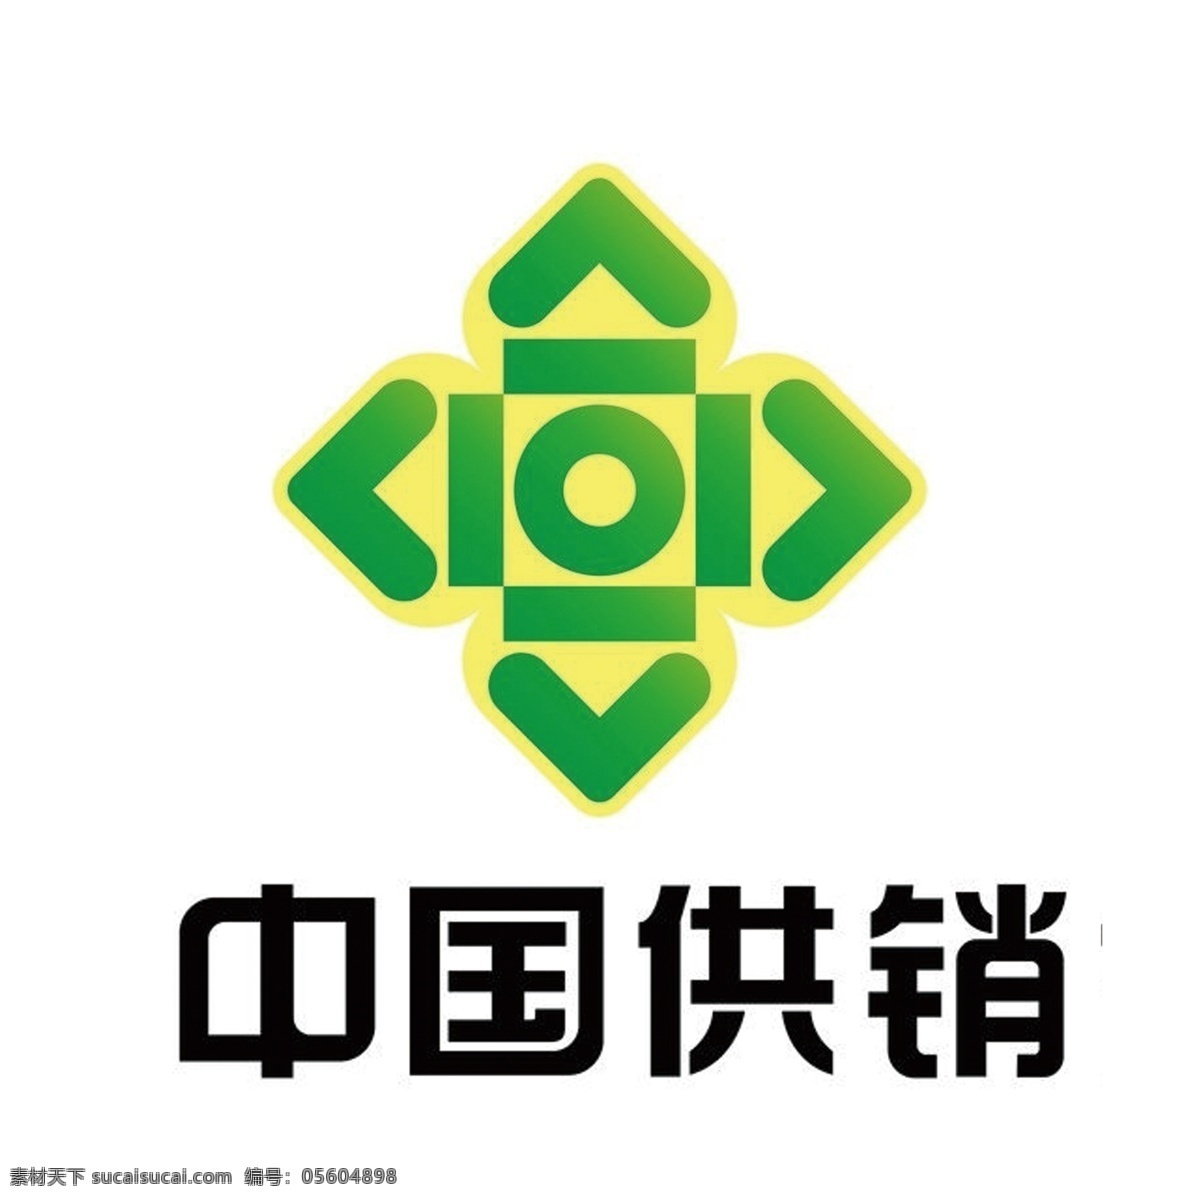 中国 供销 logo 供 销 社